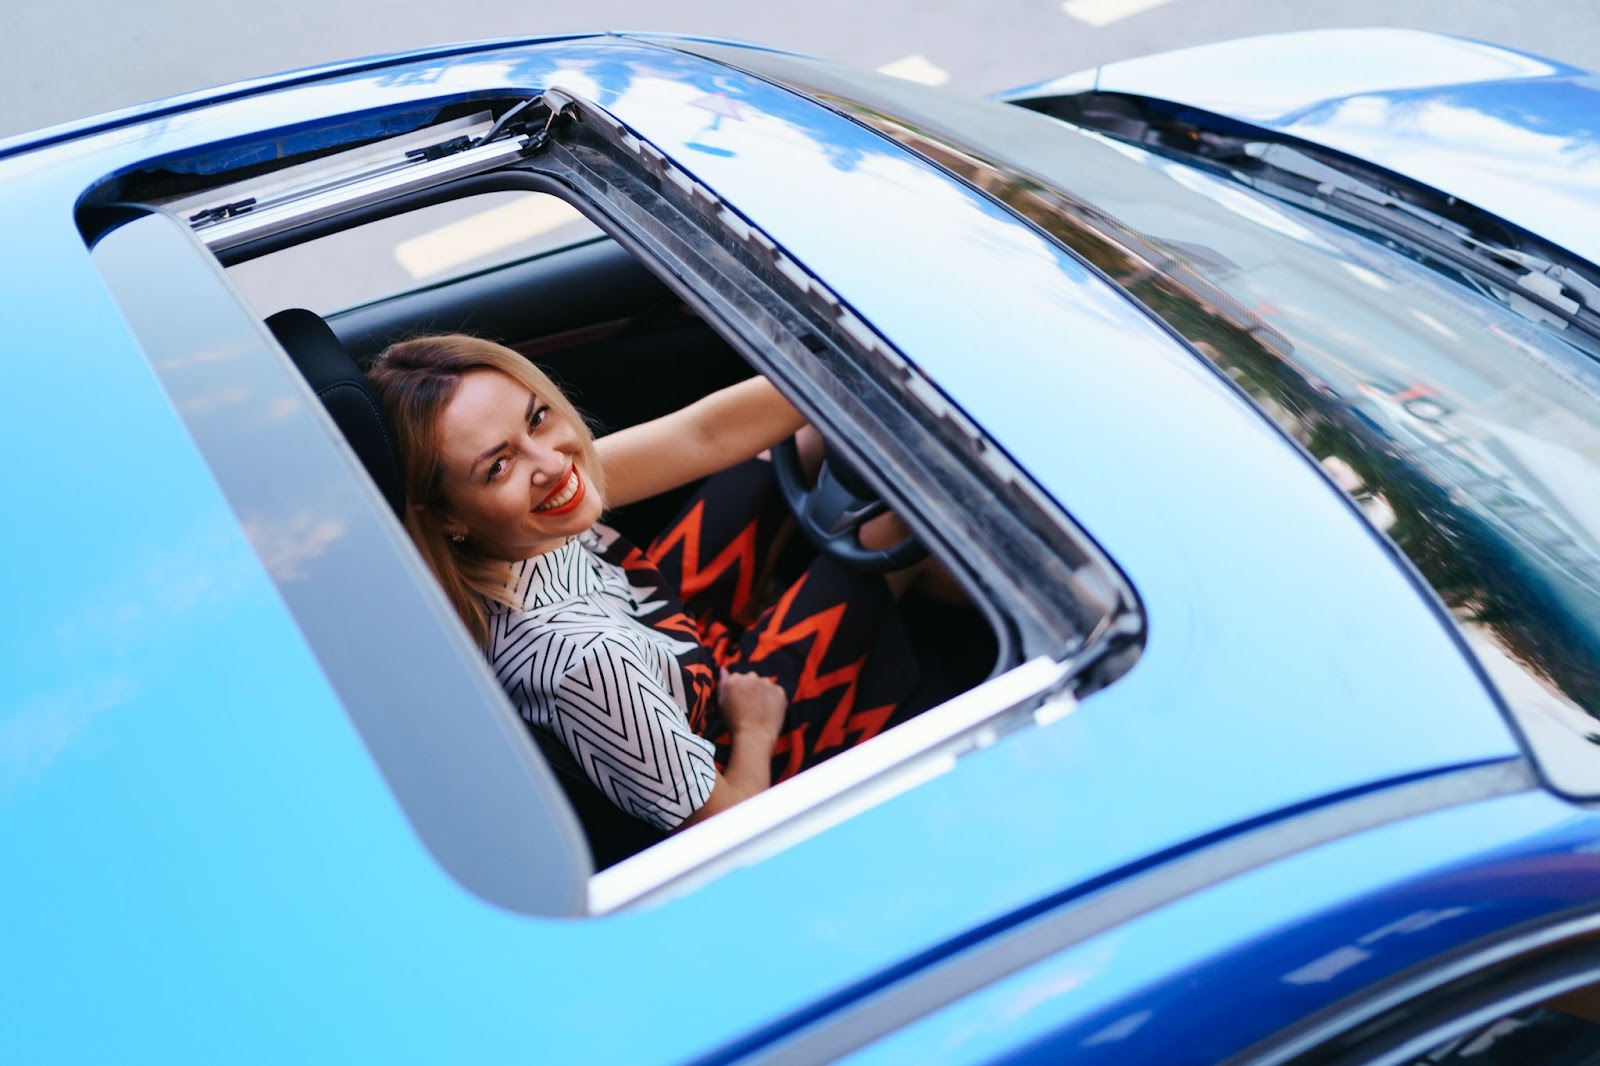 Visão superior de um carro azul, com o teto solar aberto, revelando a motorista loira sorridente.